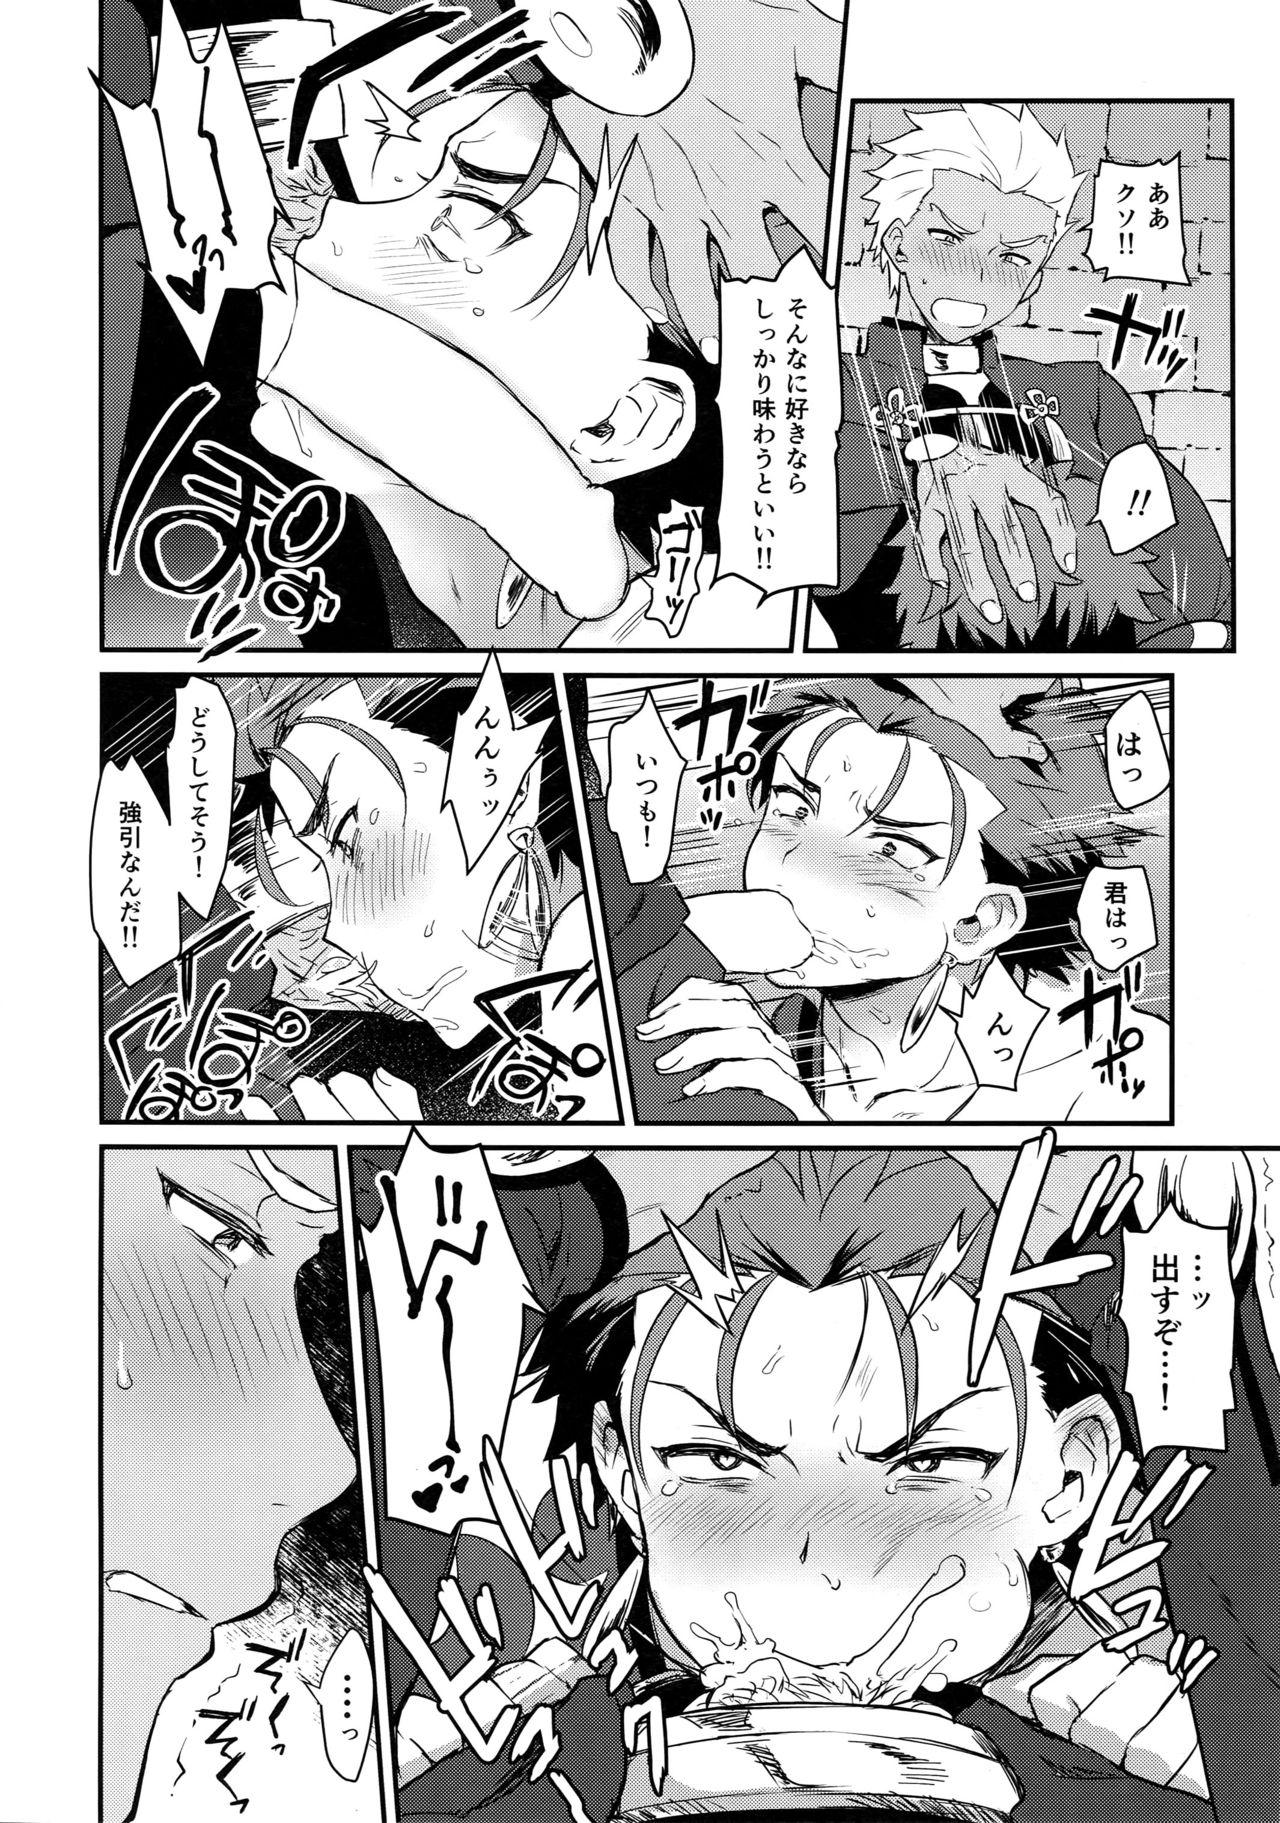 Sucks Ohayou Kara, Oyasumi Made. - Fate grand order Nurumassage - Page 5